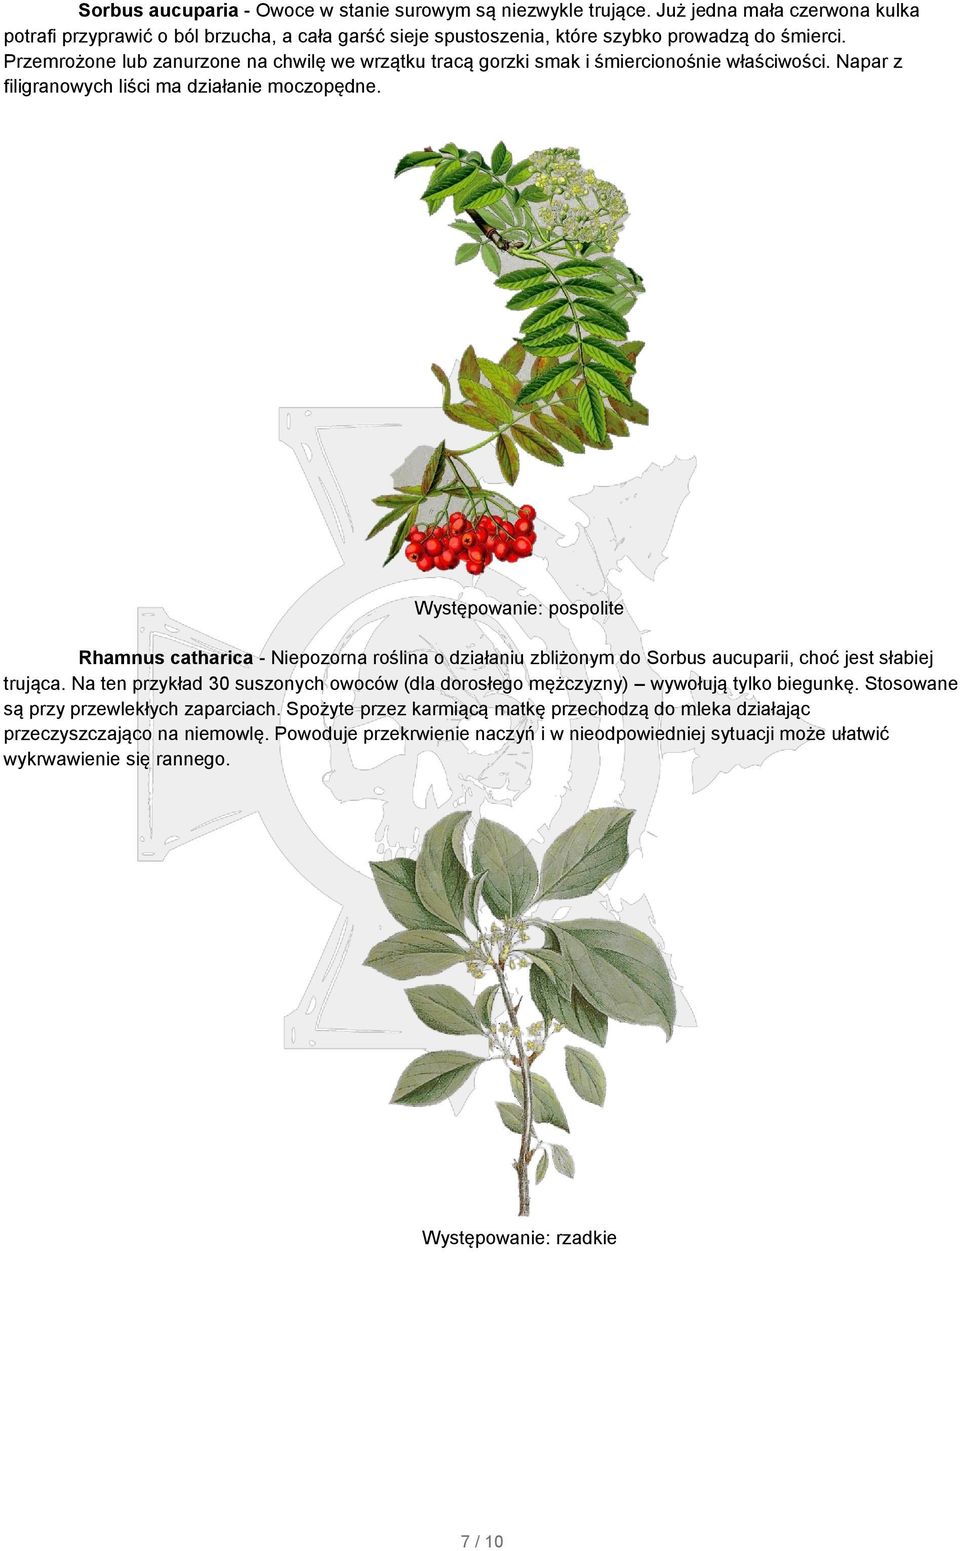 Rhamnus catharica - Niepozorna roślina o działaniu zbliżonym do Sorbus aucuparii, choć jest słabiej trująca. Na ten przykład 30 suszonych owoców (dla dorosłego mężczyzny) wywołują tylko biegunkę.